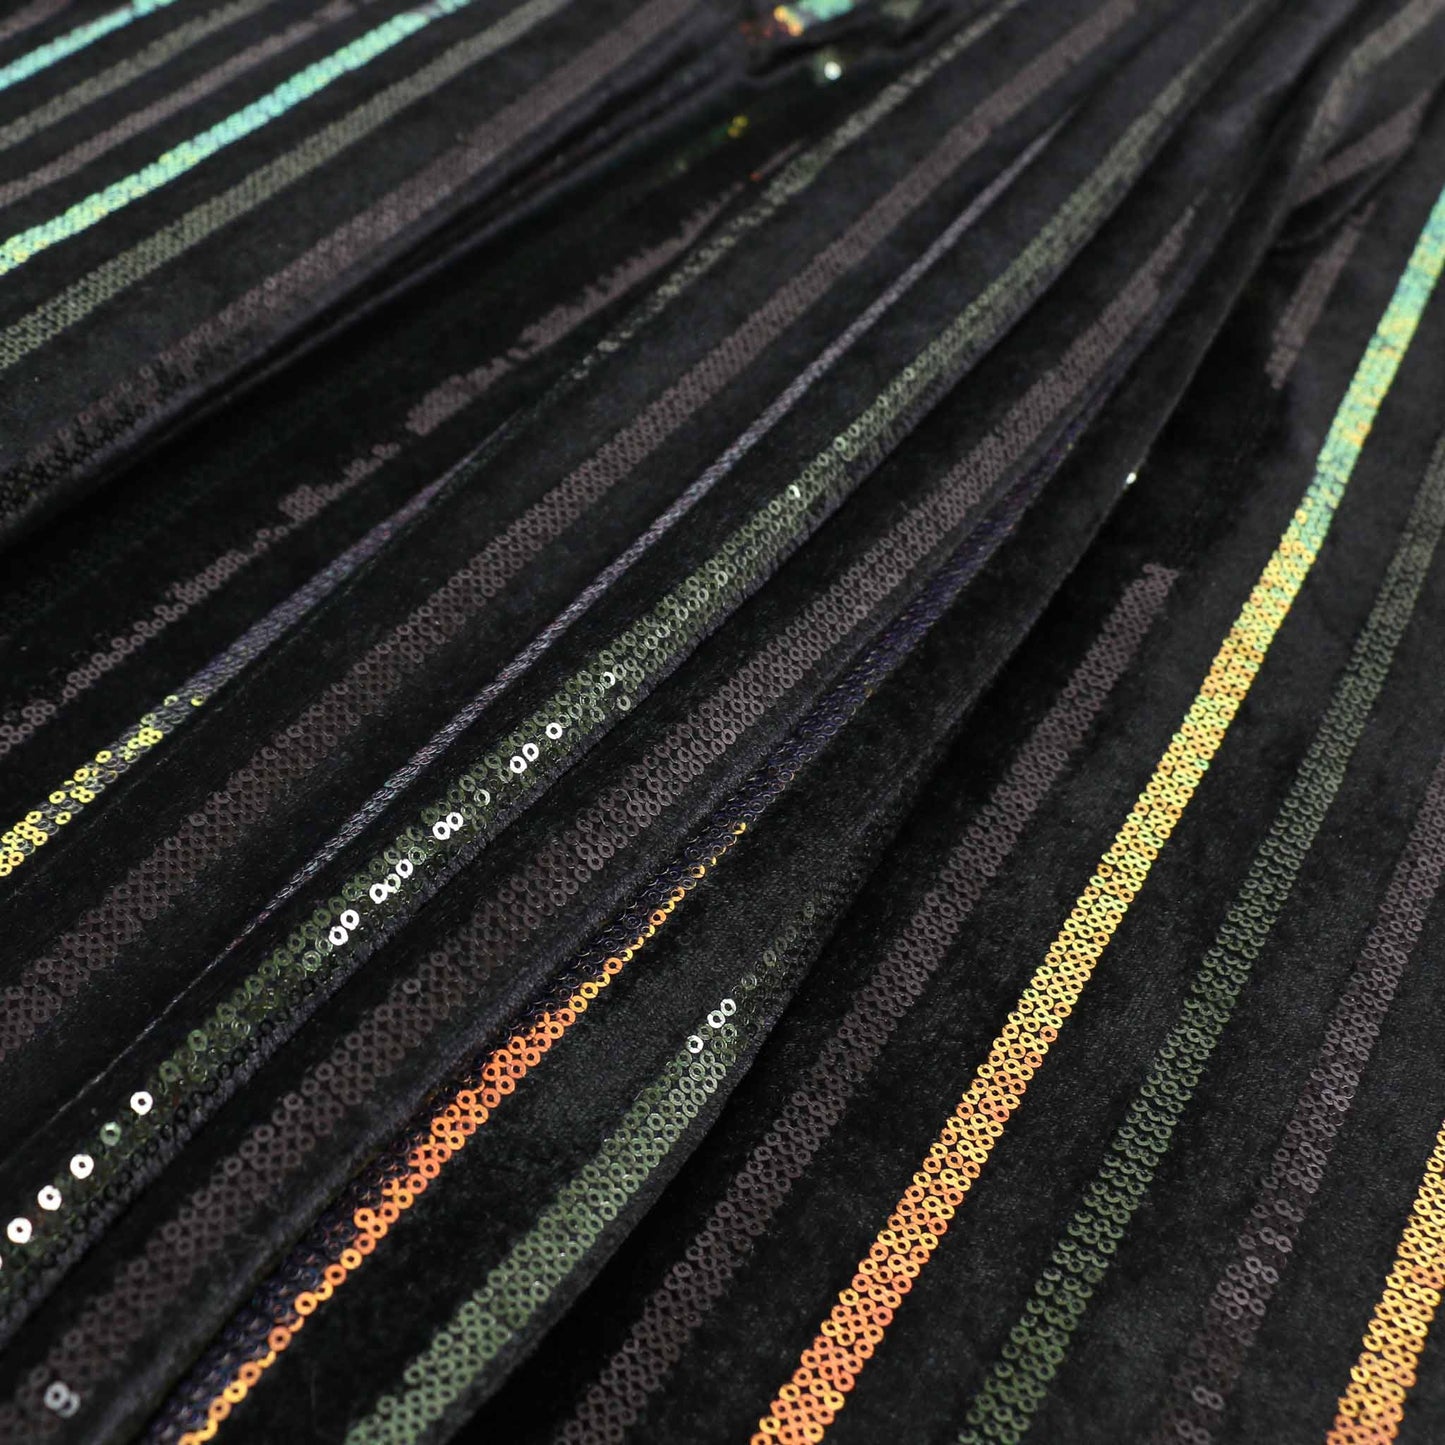 Sequin Velour Fabric - Black, iridescent